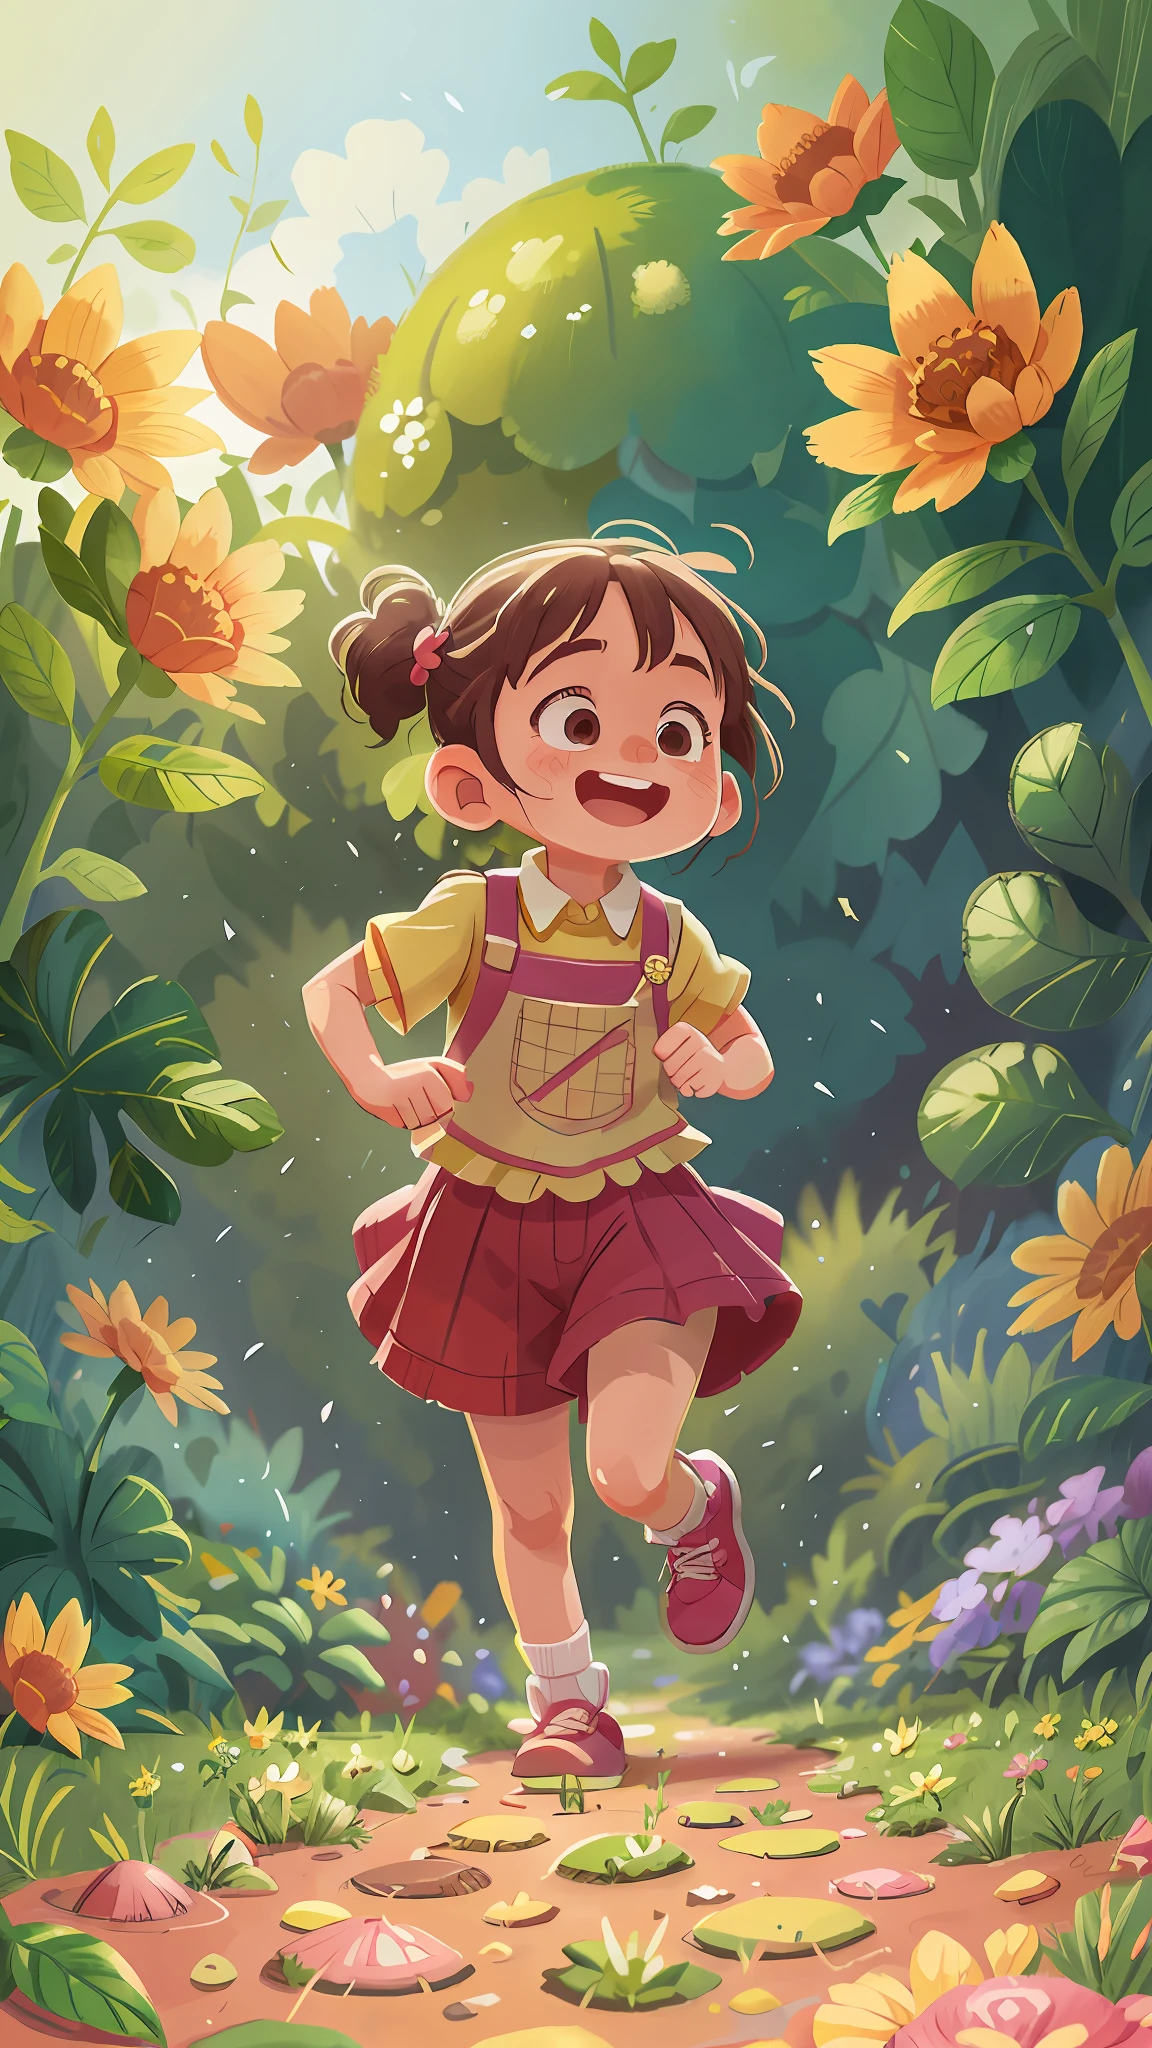 Ein 6-jähriges Mädchen rennt in einem Garten, sie trägt Gärtnerkleidung, ist glücklich, Lachen, perfekte Qualität, Klarer Fokus (Chaos - Haus: 0.8), (Meisterwerk: 1.2) (Realistisch: 1.2) (Bokeh) (beste Qualität) (detaillierte Haut: 1.3) (komplizierte Details) (8K) (Augendetail) (scharfer Fokus), (Glücklich)